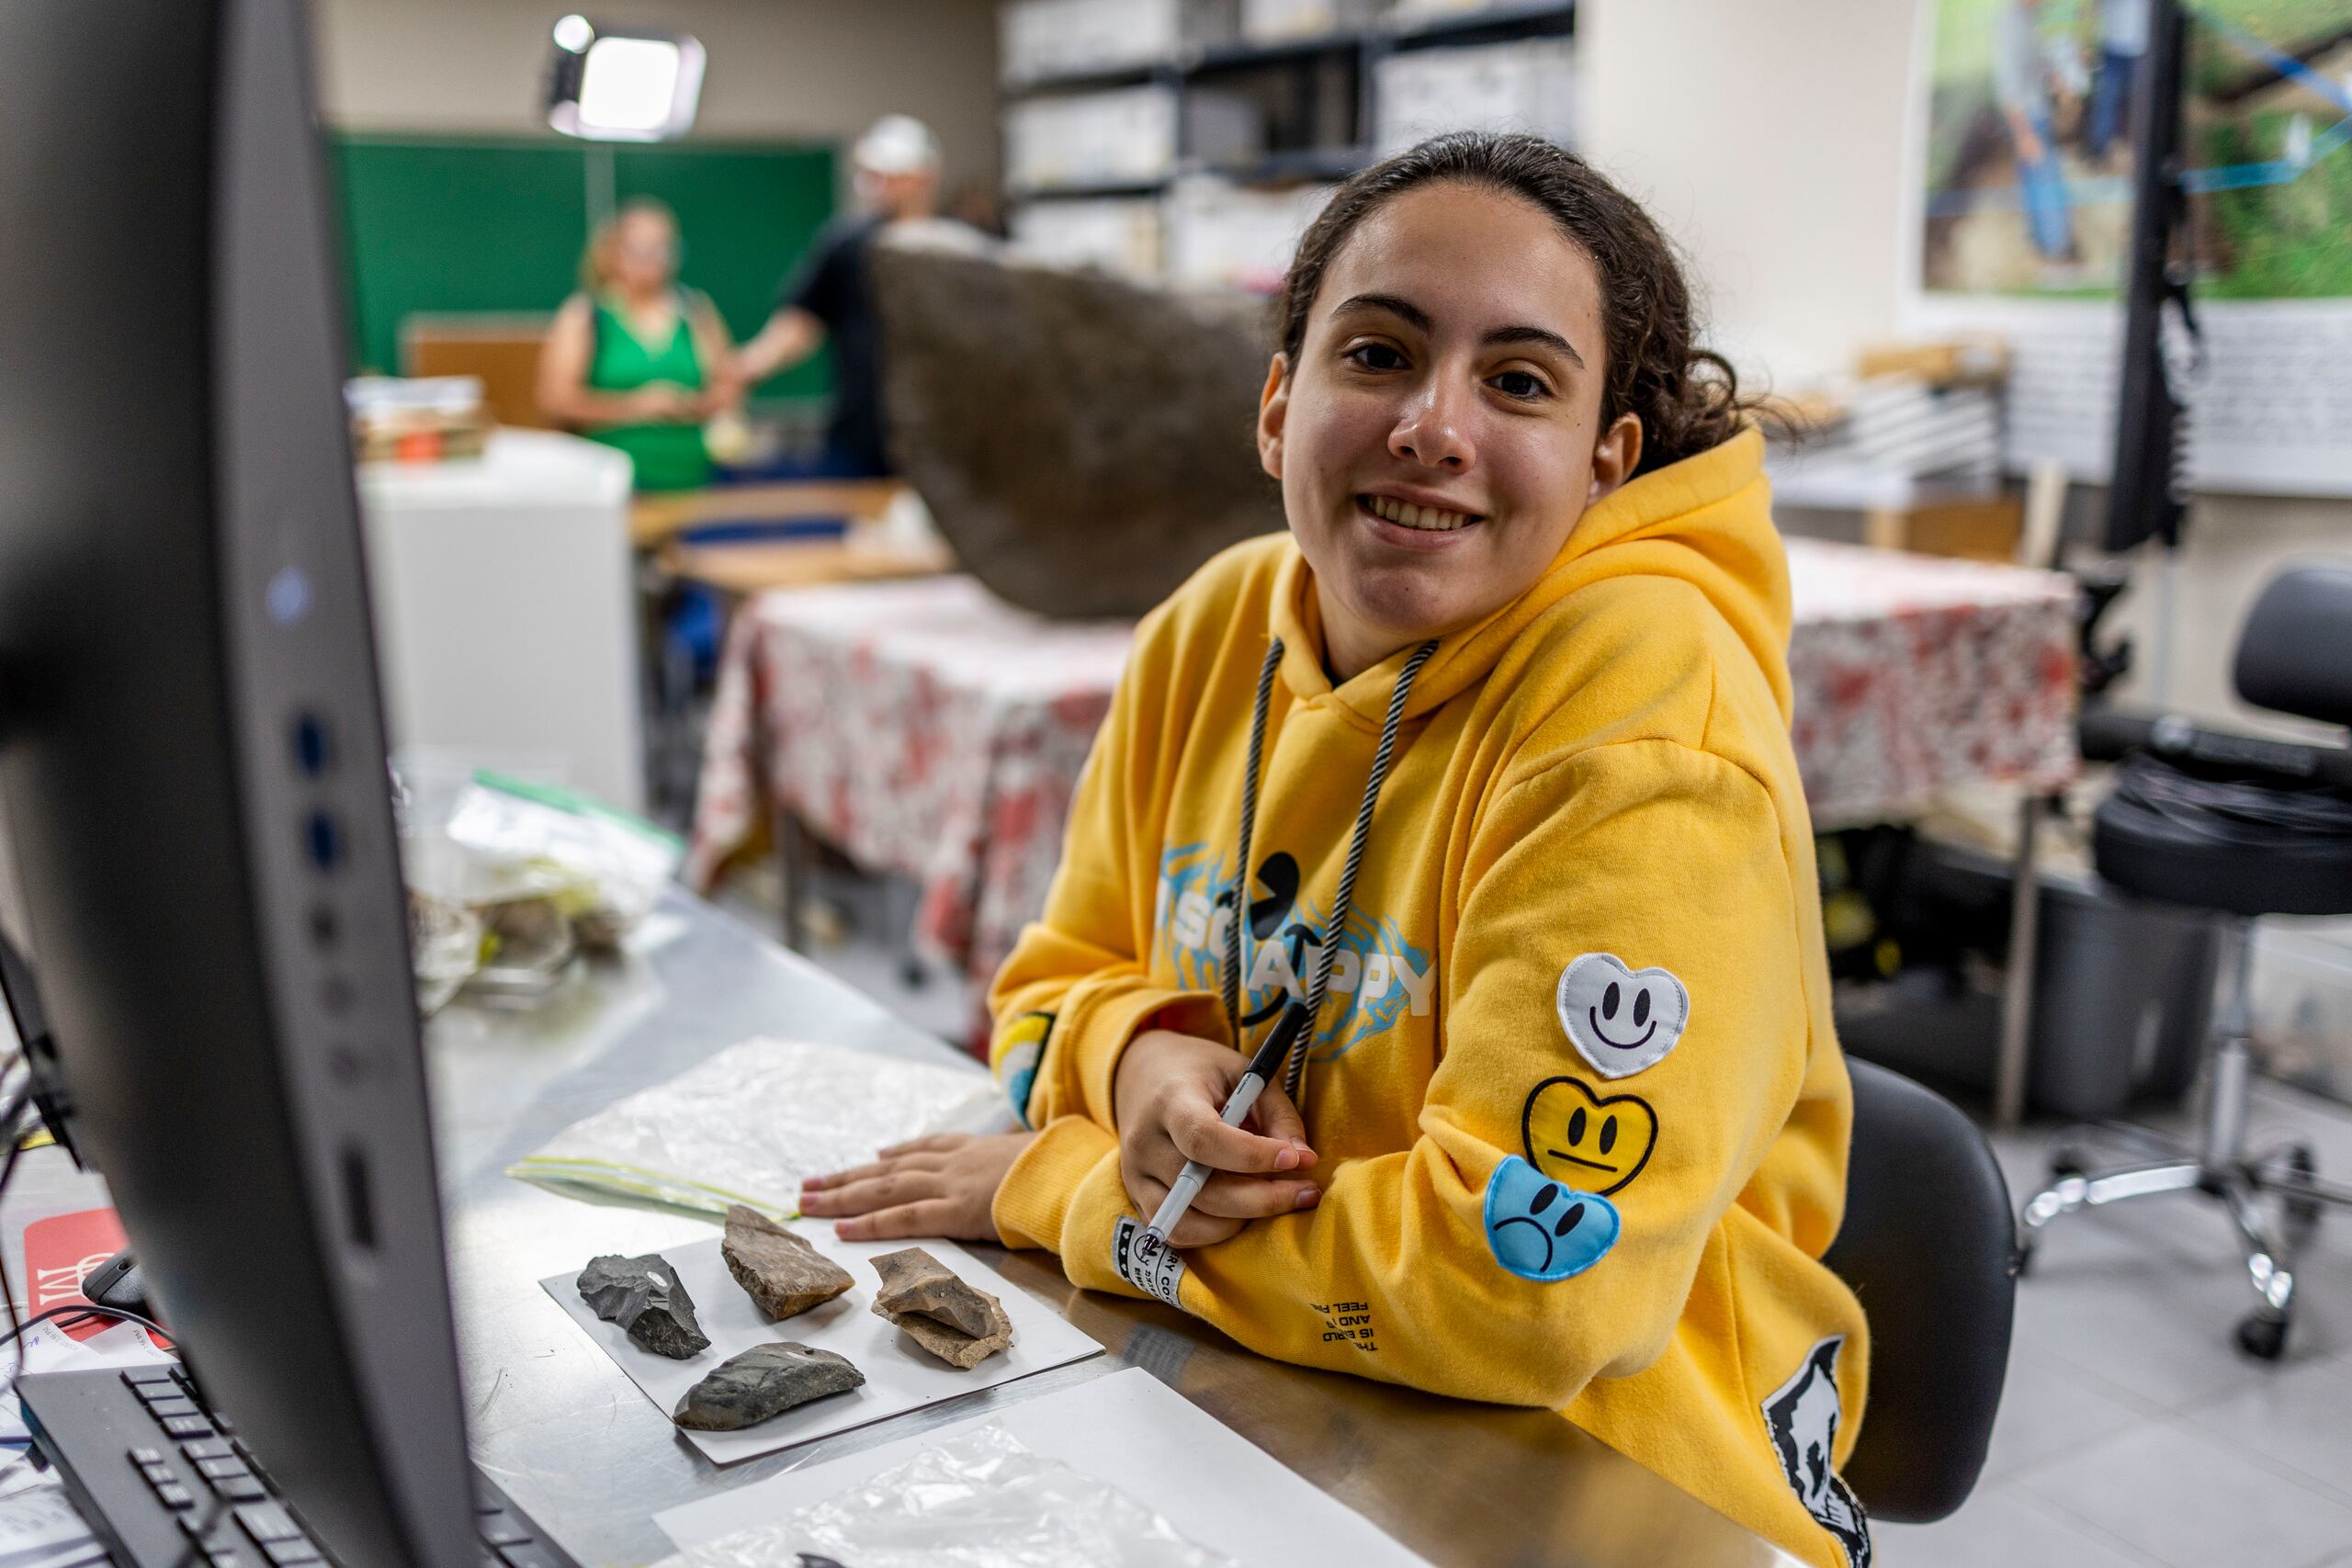 La estudiante Dalixa Llorens Boneta, quien realiza un bachillerato con énfasis en arqueología, trabaja clasificando y organizando diferentes artefactos que van a ser expuestos al público próximamente.